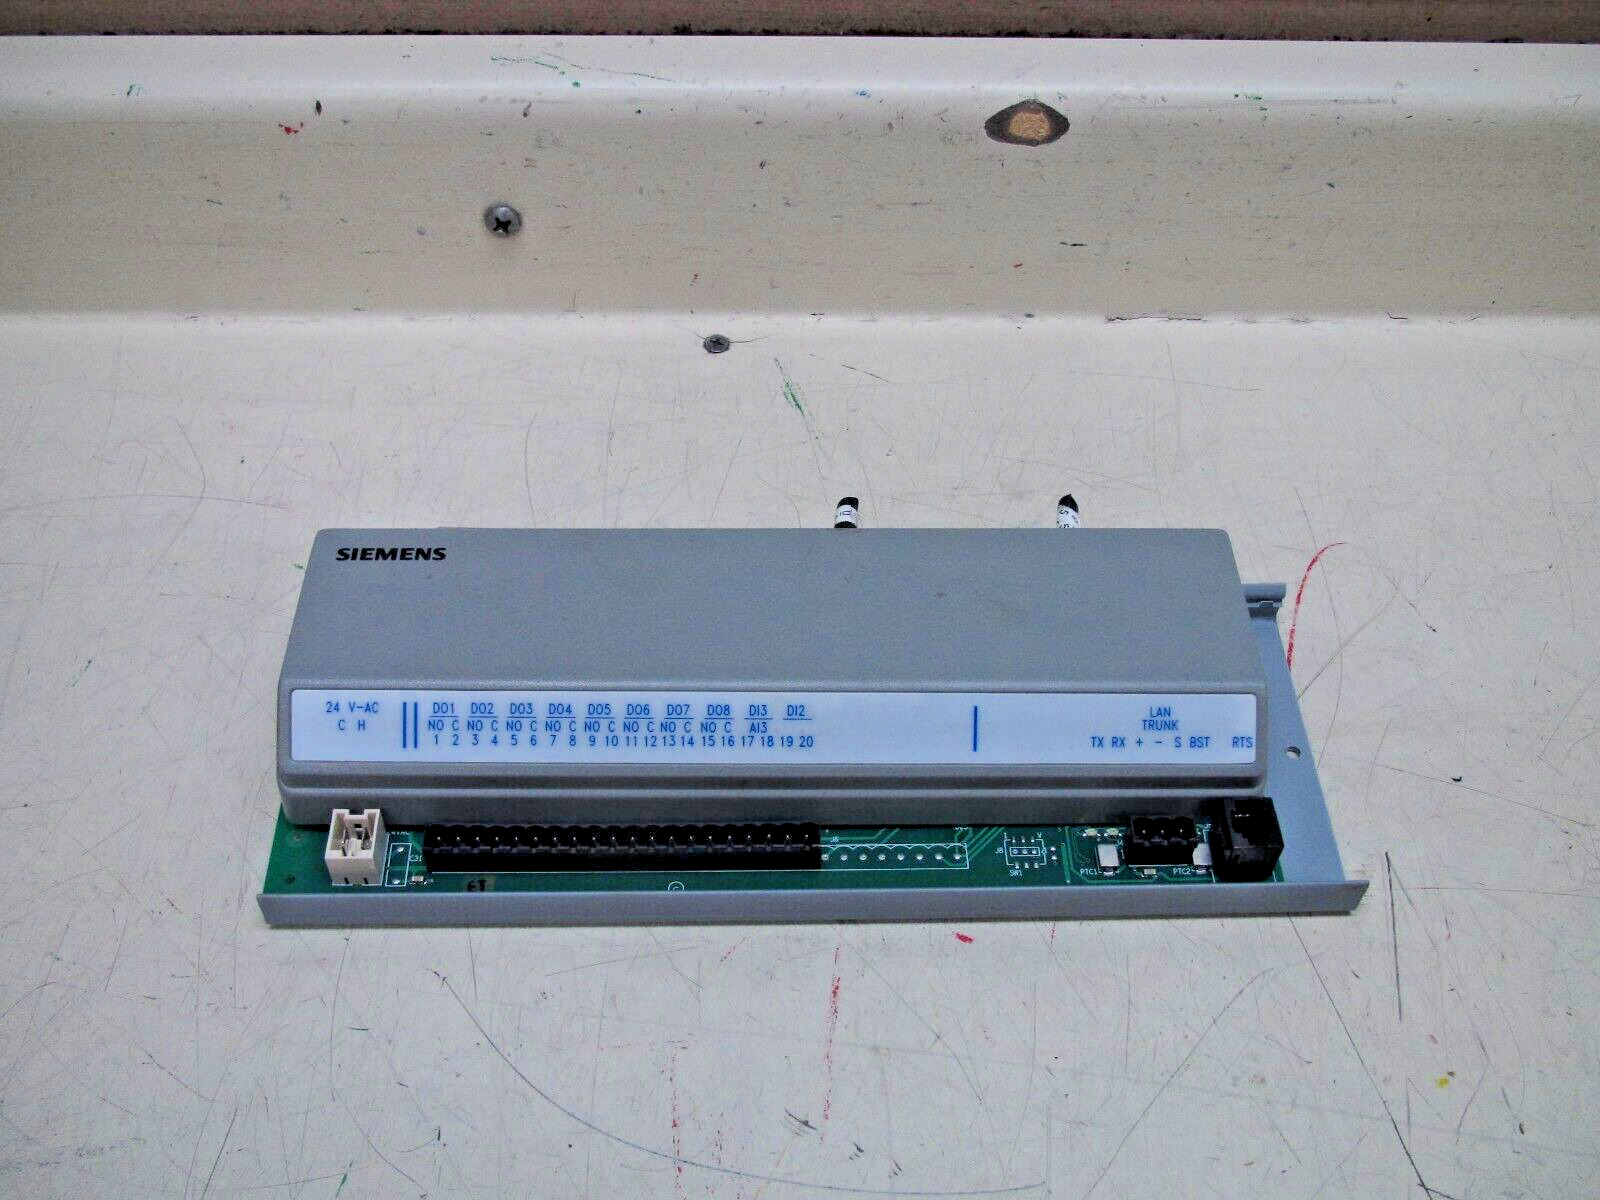 Siemens Apogee Terminal Equipment Controller P/N: 540-517 